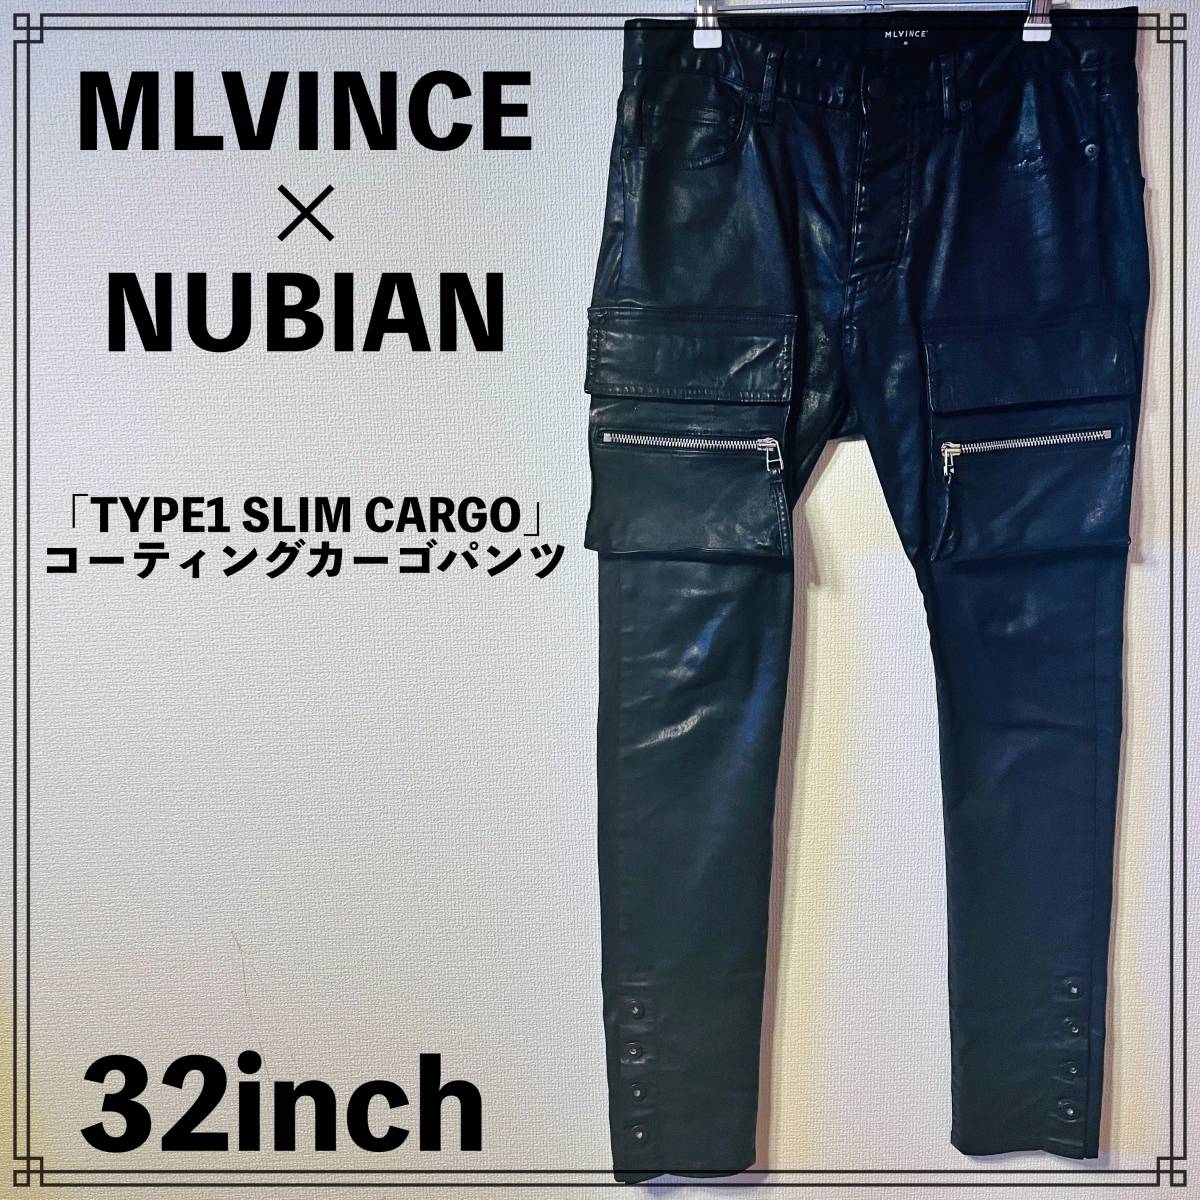 【美中古】MLVINCE x NUBIAN 「TYPE1 SLIM CARGO」 コーティングカーゴパンツ 32inch メルビンス ヌビアン スリム